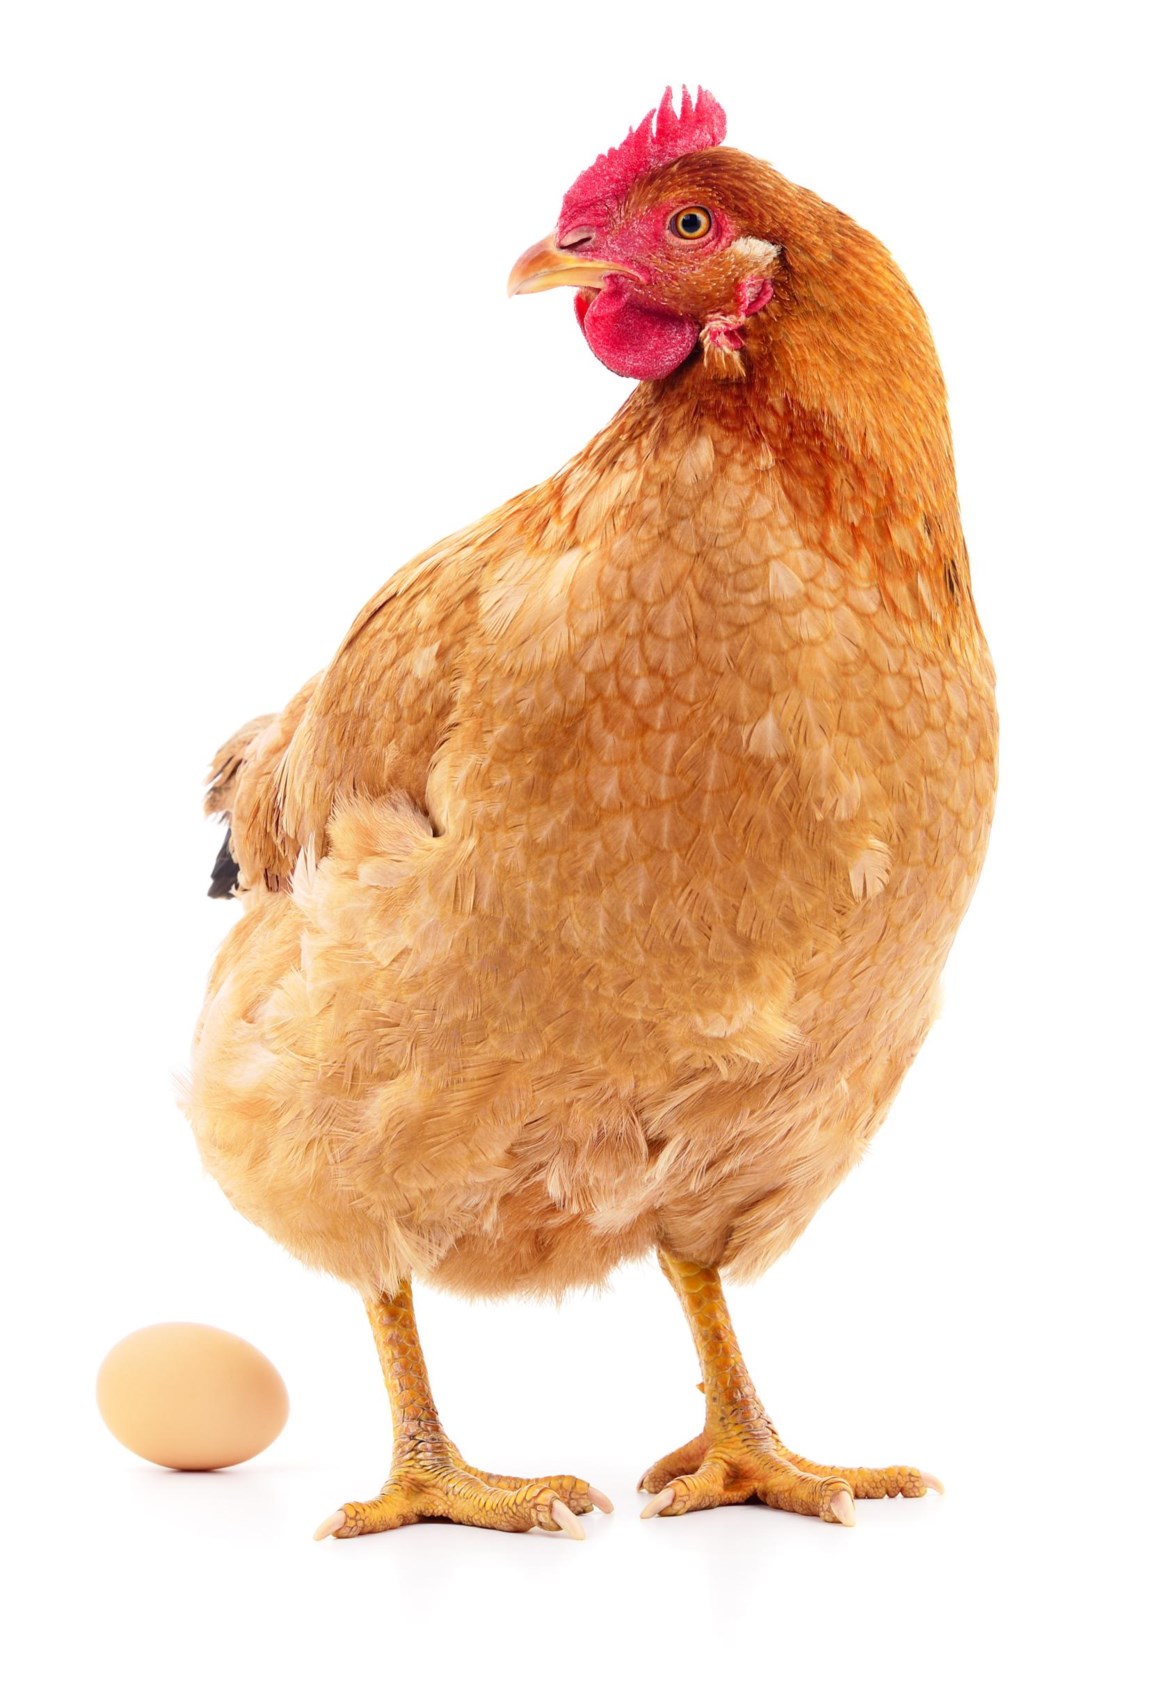 Krijt capsule passage Wat als kippen eieren leggen met geneesmiddelen in? | De Standaard Mobile